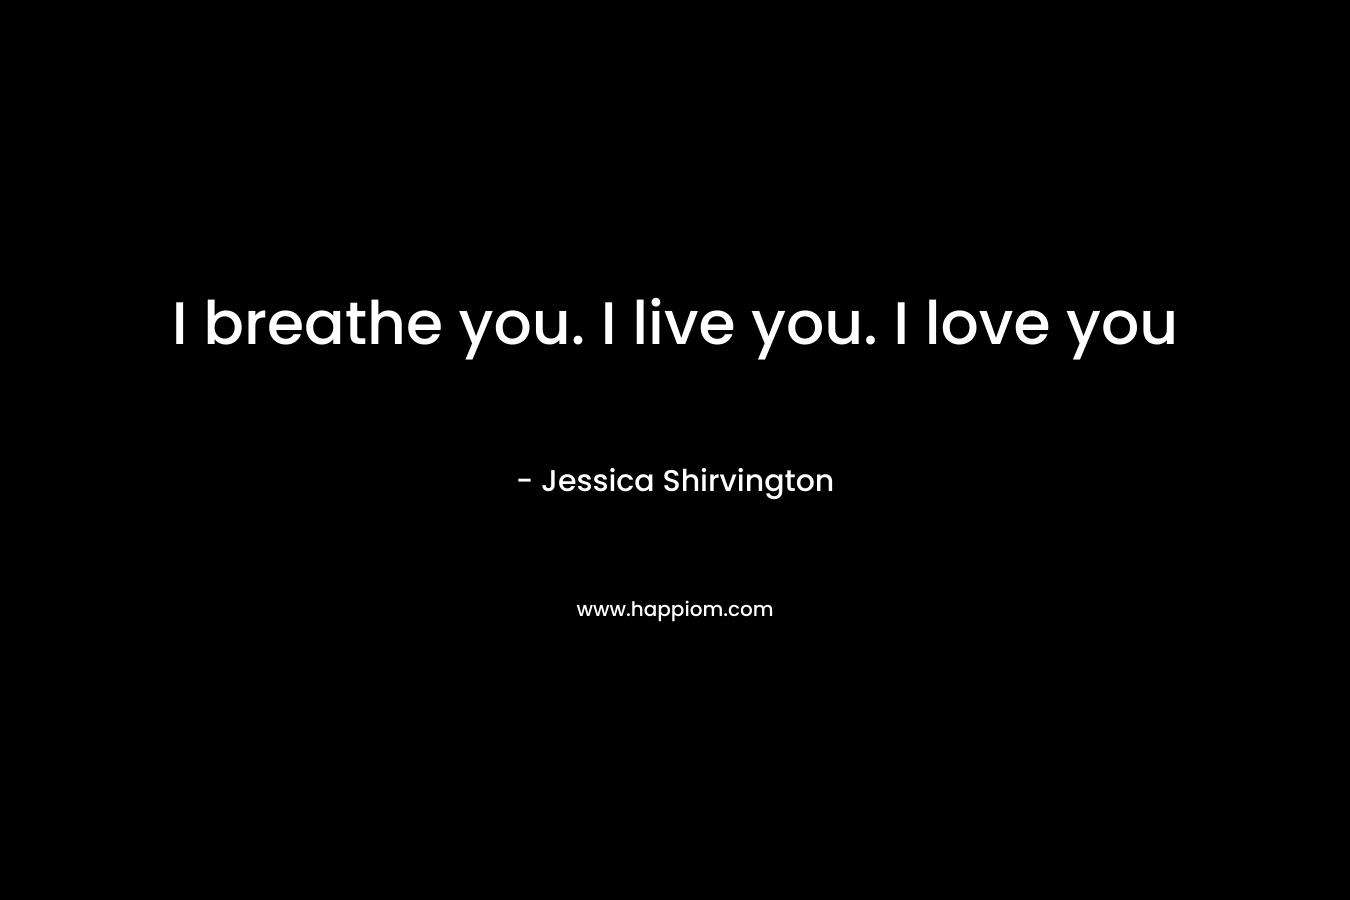 I breathe you. I live you. I love you